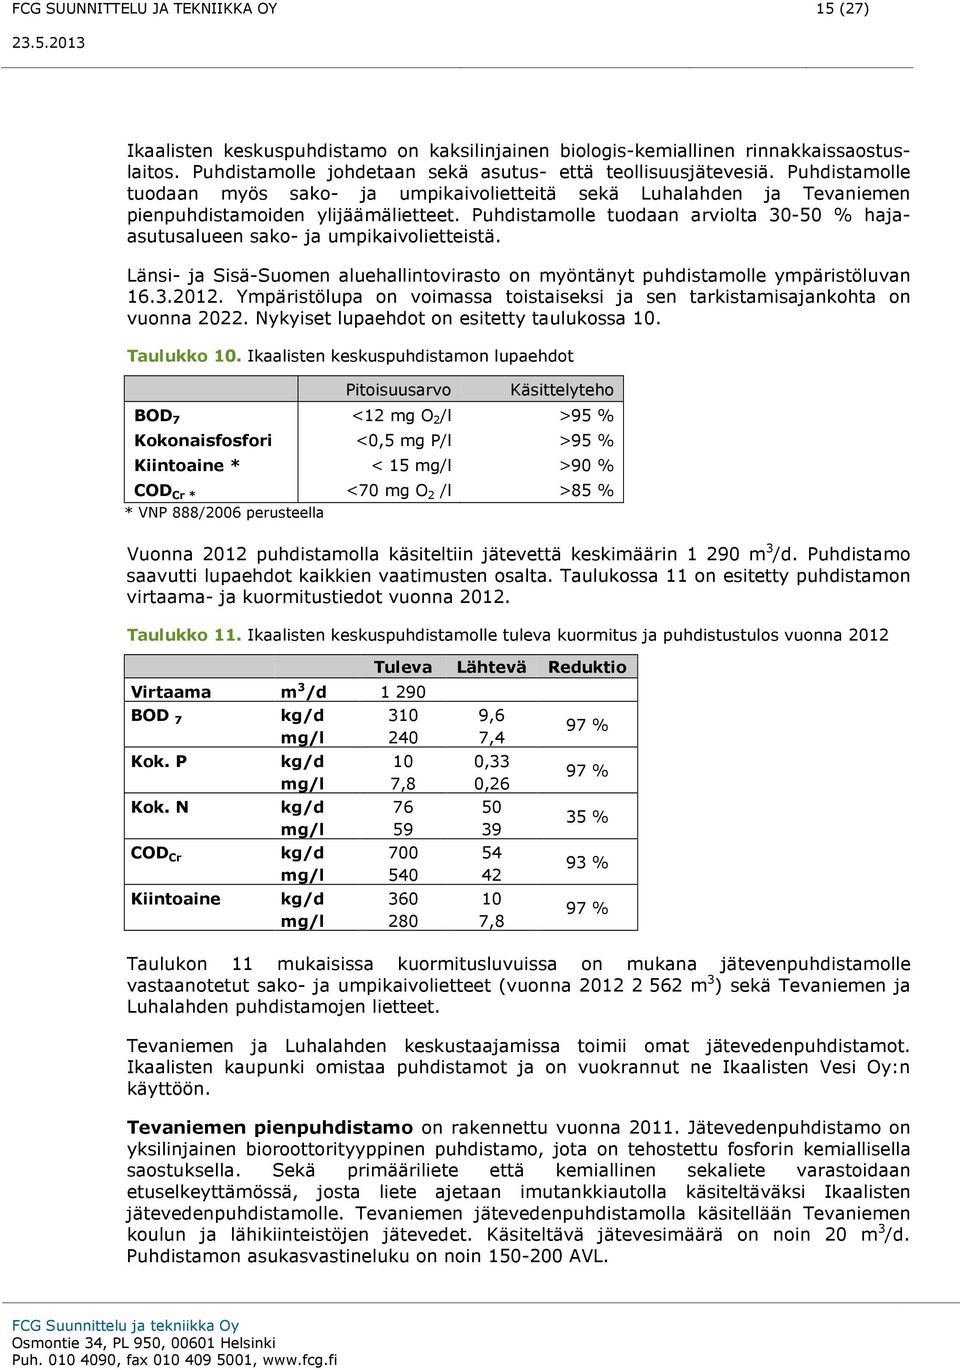 Puhdistamolle tuodaan arviolta 30-50 % hajaasutusalueen sako- ja umpikaivolietteistä. Länsi- ja Sisä-Suomen aluehallintovirasto on myöntänyt puhdistamolle ympäristöluvan 16.3.2012.